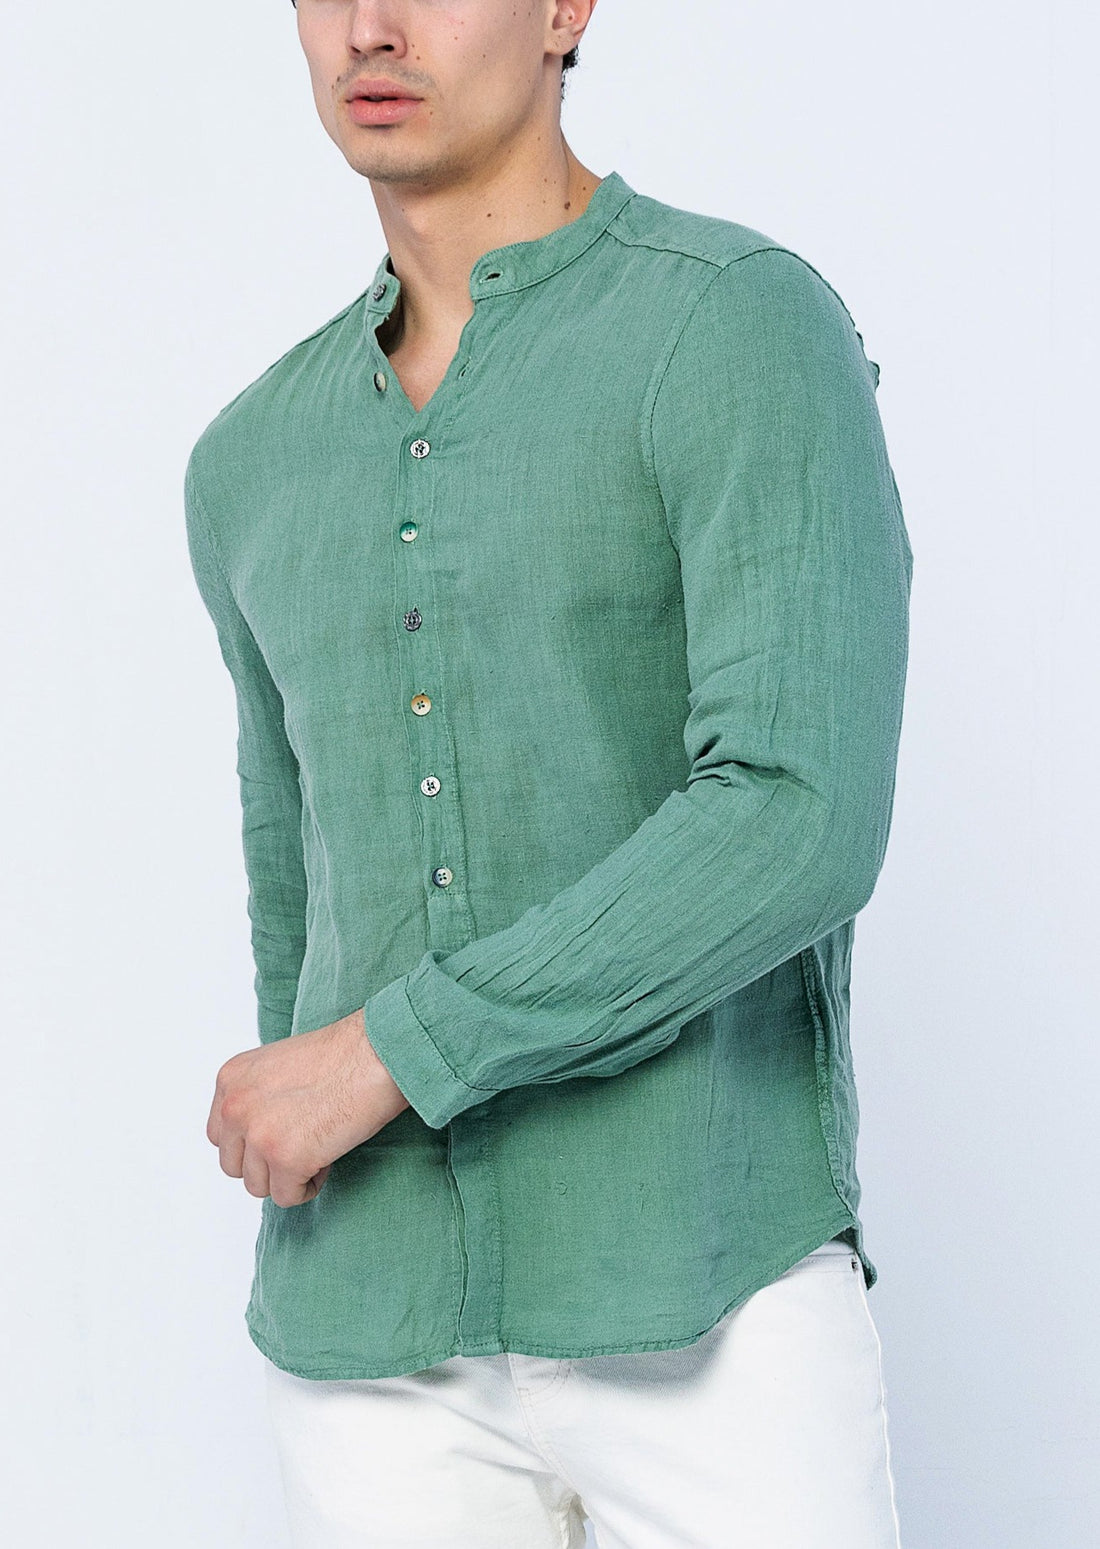 Teal Green Shirt